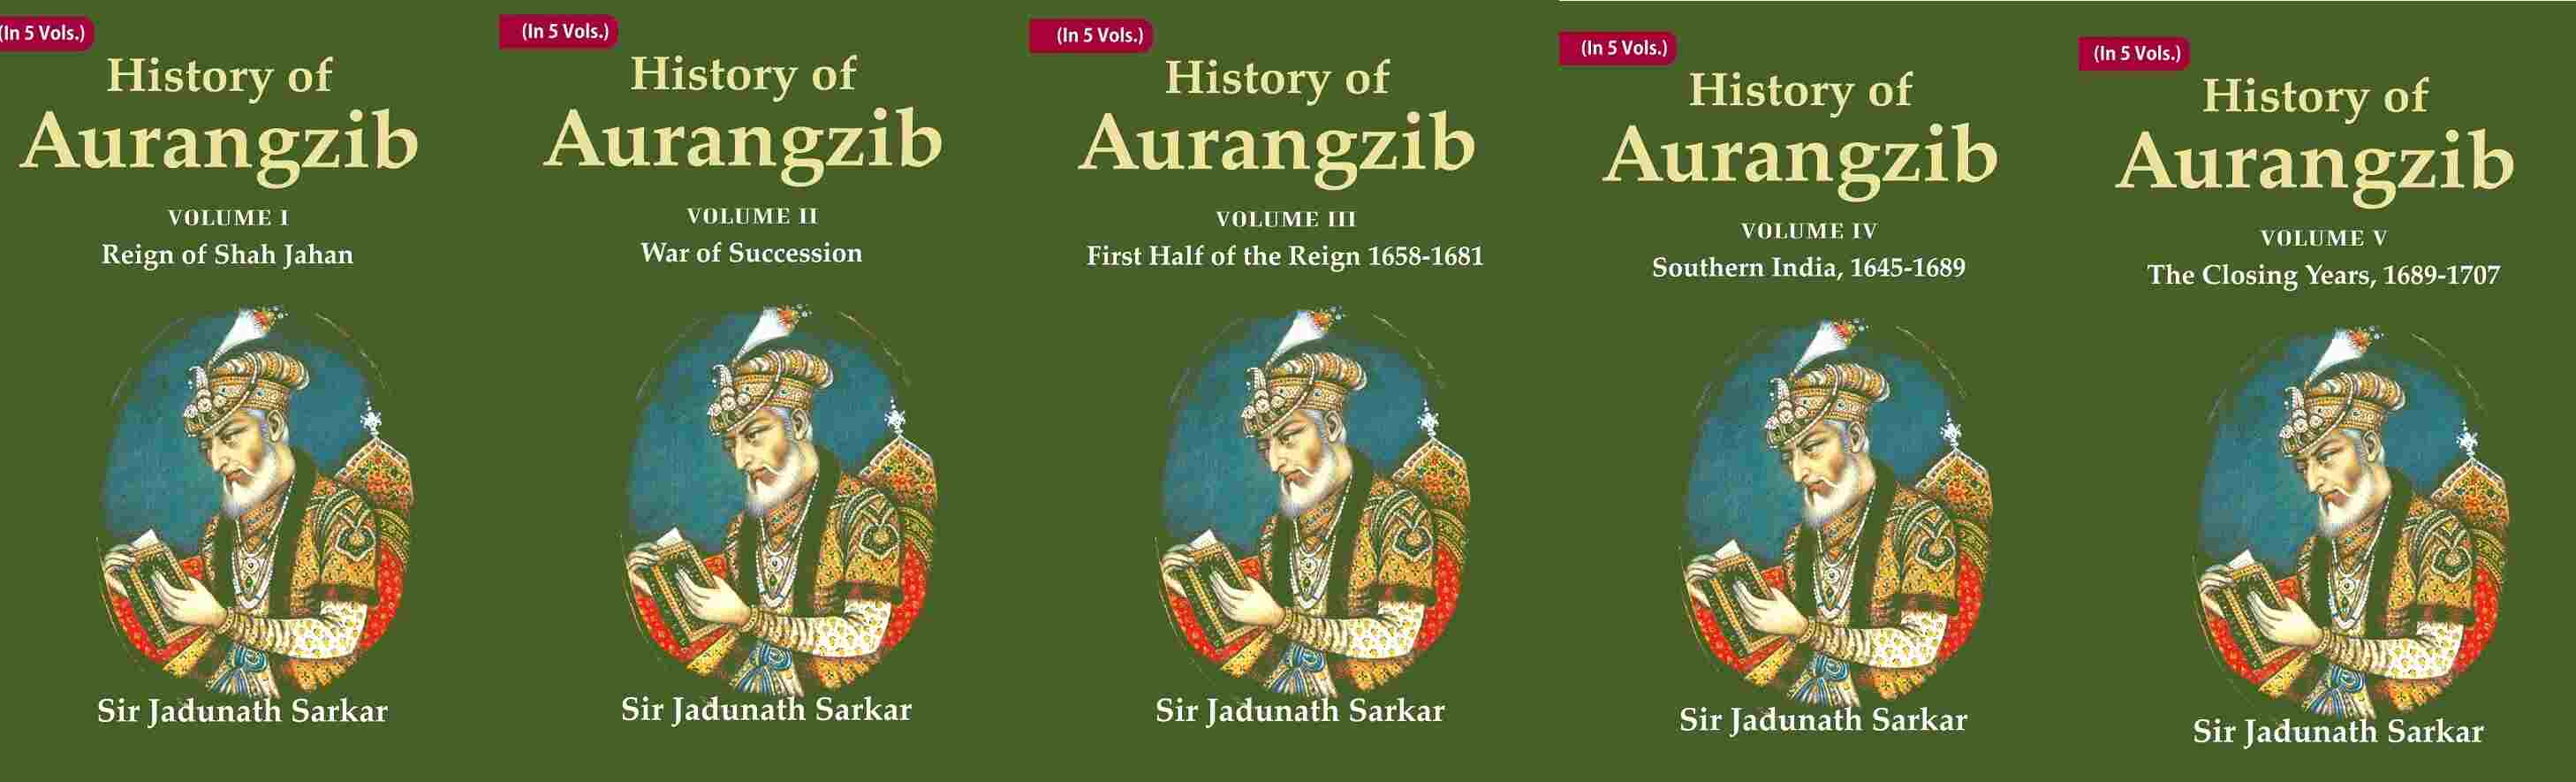 History of Aurangzib 5 Vols. Set 5 Vols. Set 5 Vols. Set 5 Vols. Set